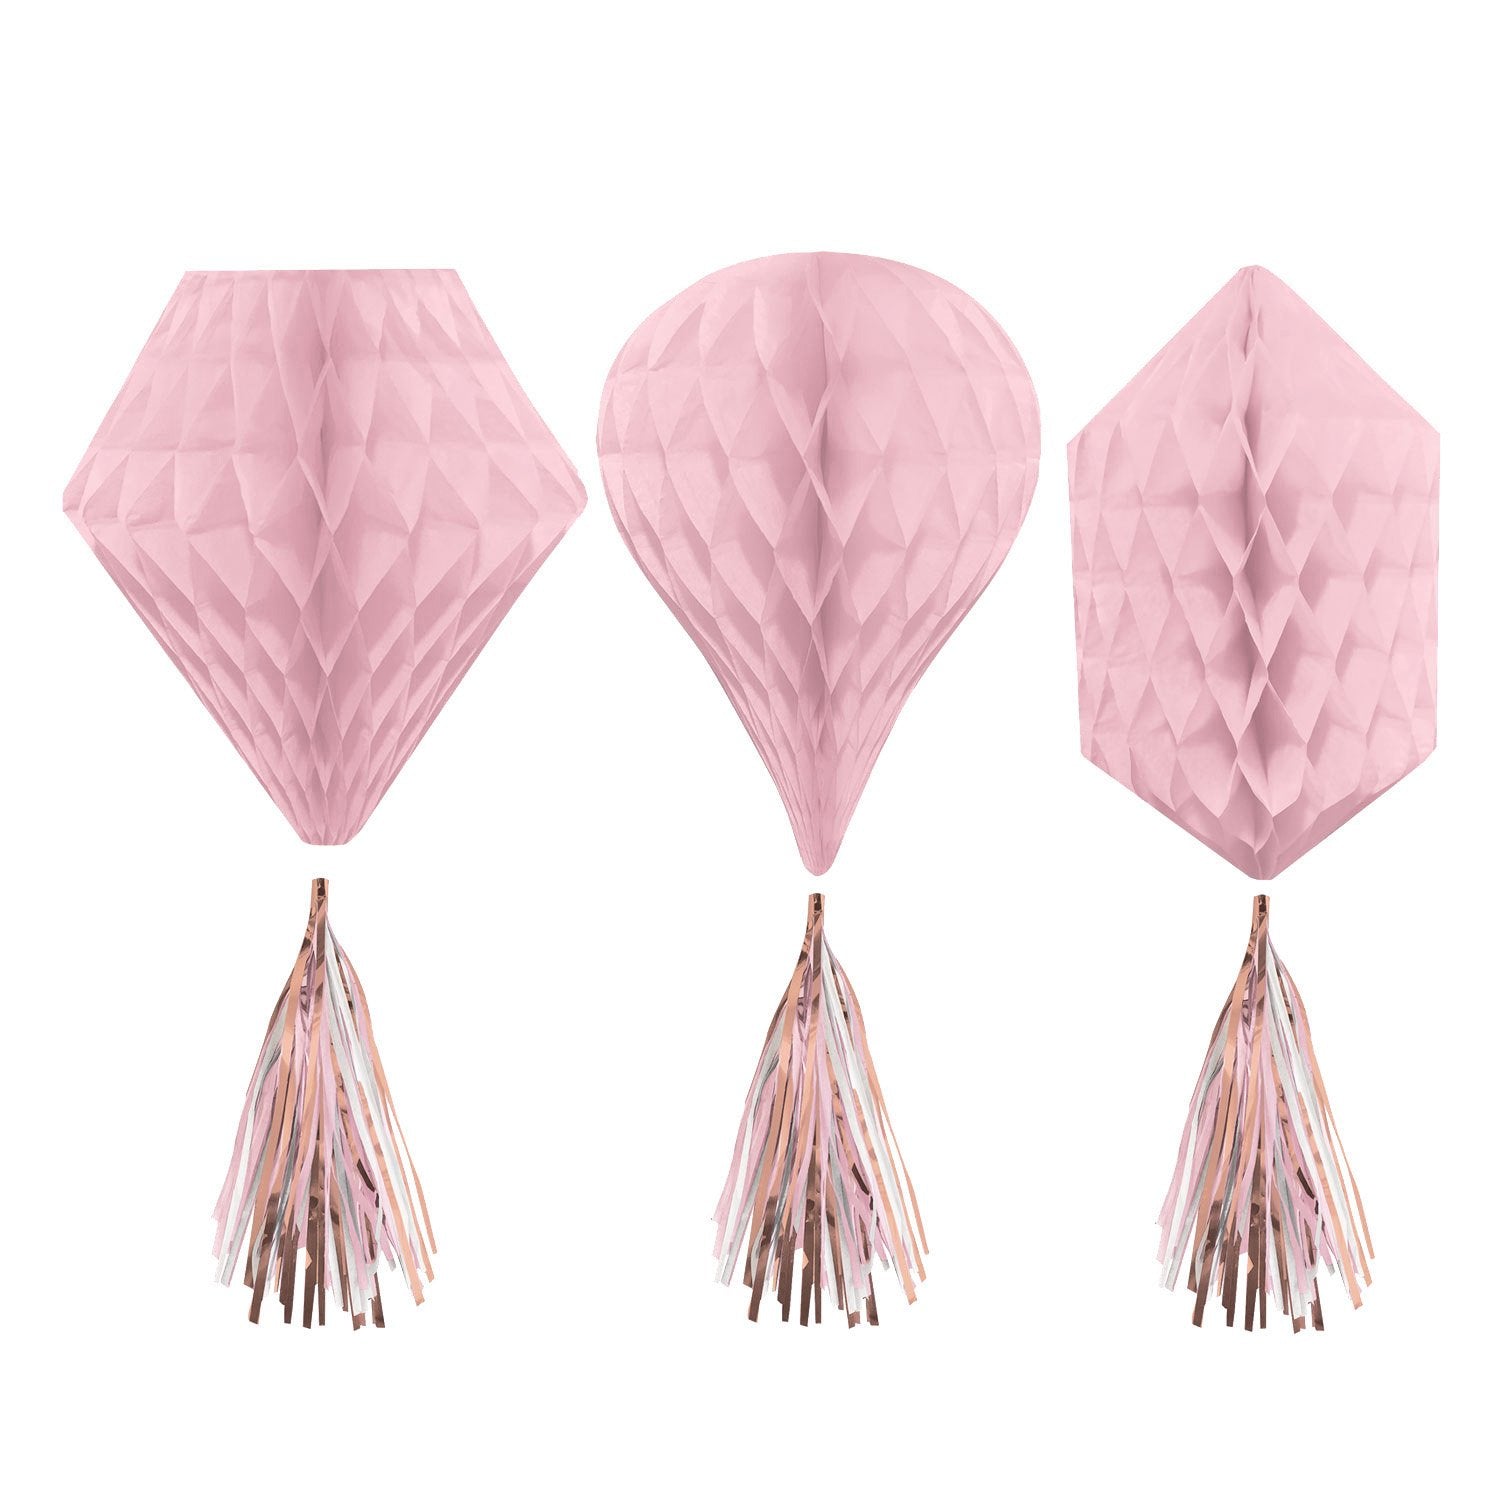 დეკორაცია ფიჭა ღია ვარდისფერი ქაღალდის Blush 30.4 სმ 3ც/3 Honeycomb Decorations Rose Gold Blush Paper 30.4 cm